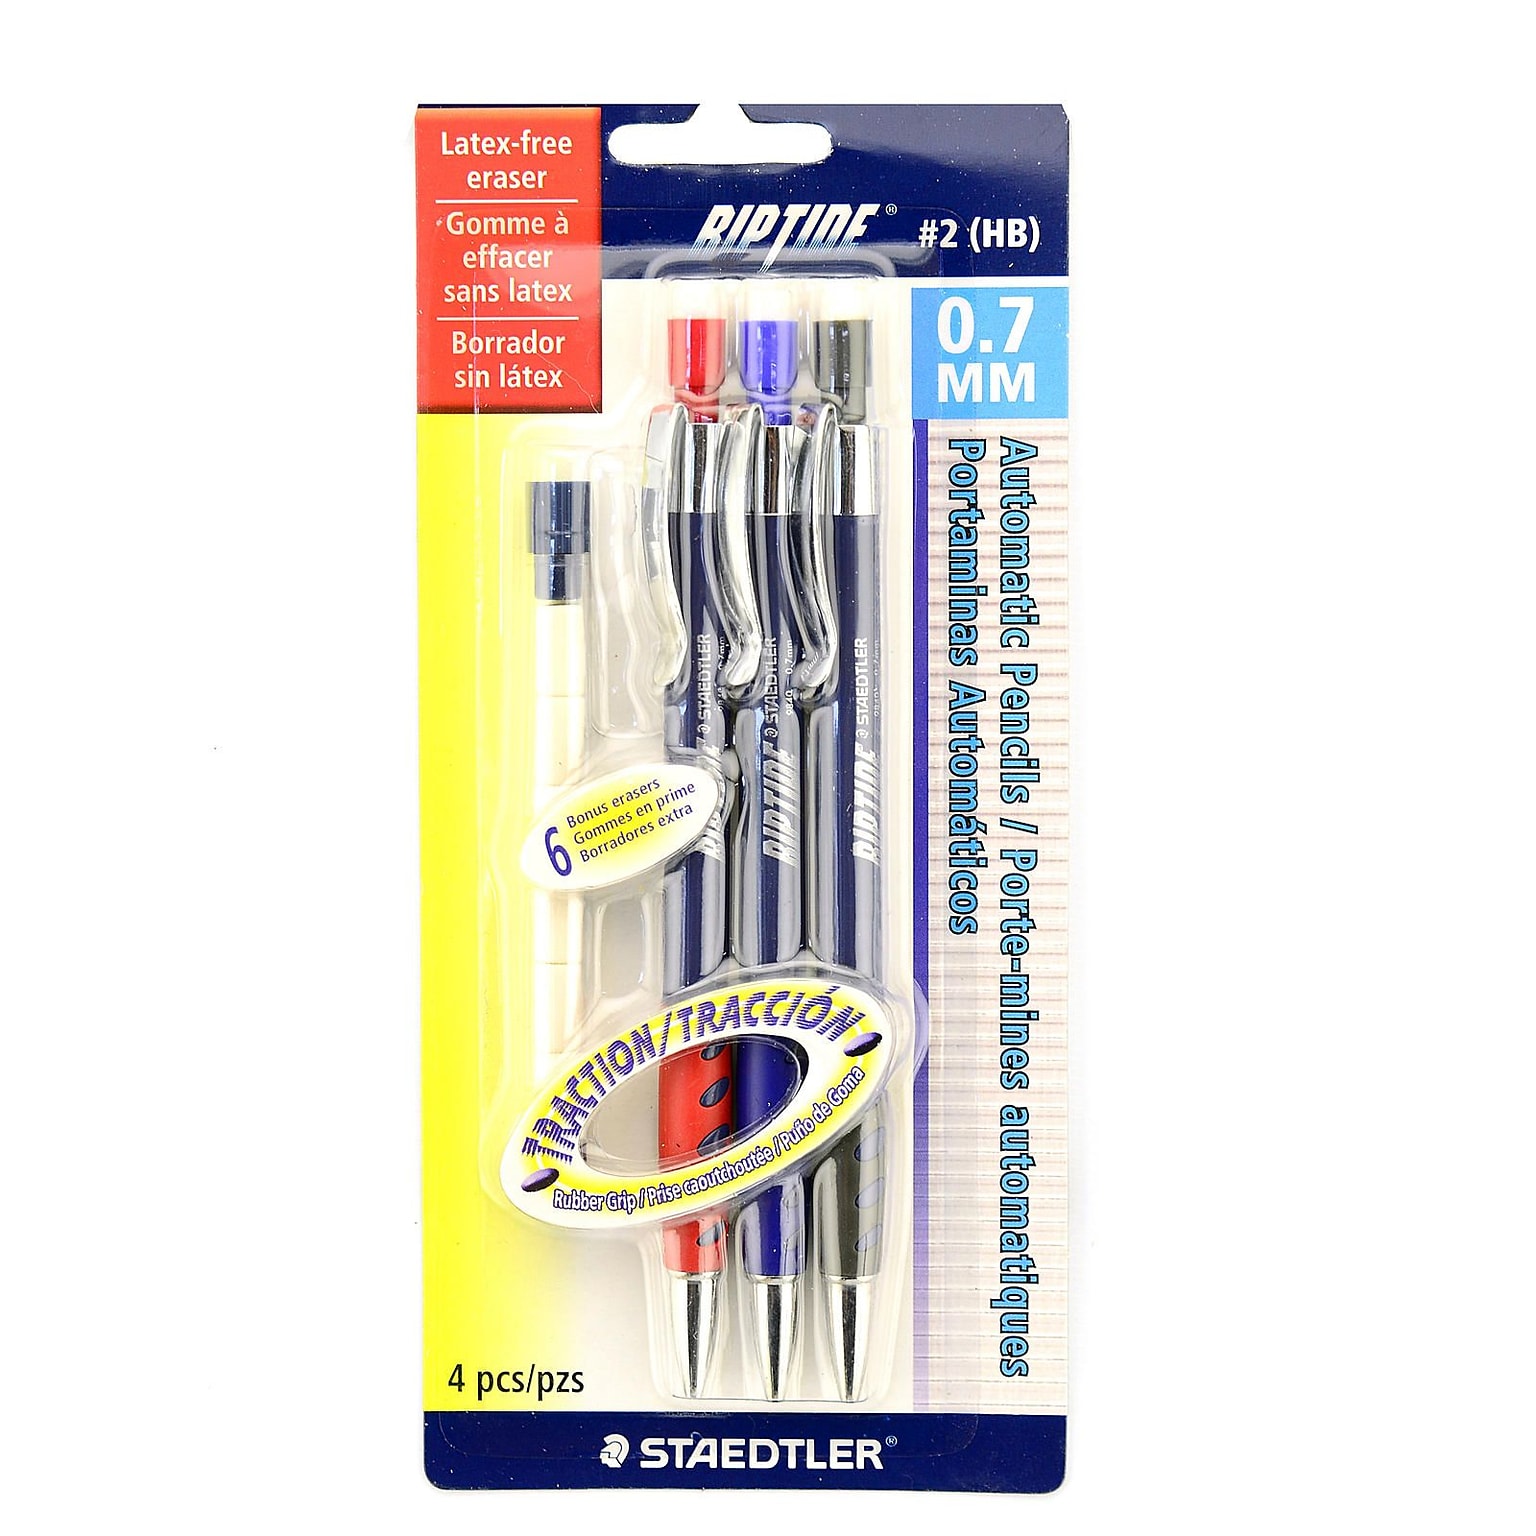 Staedtler Riptide Mechanical Pencil Sets 0.7 Mm Set Of 3 [Pack Of 8] (8PK-984 07ABK3)